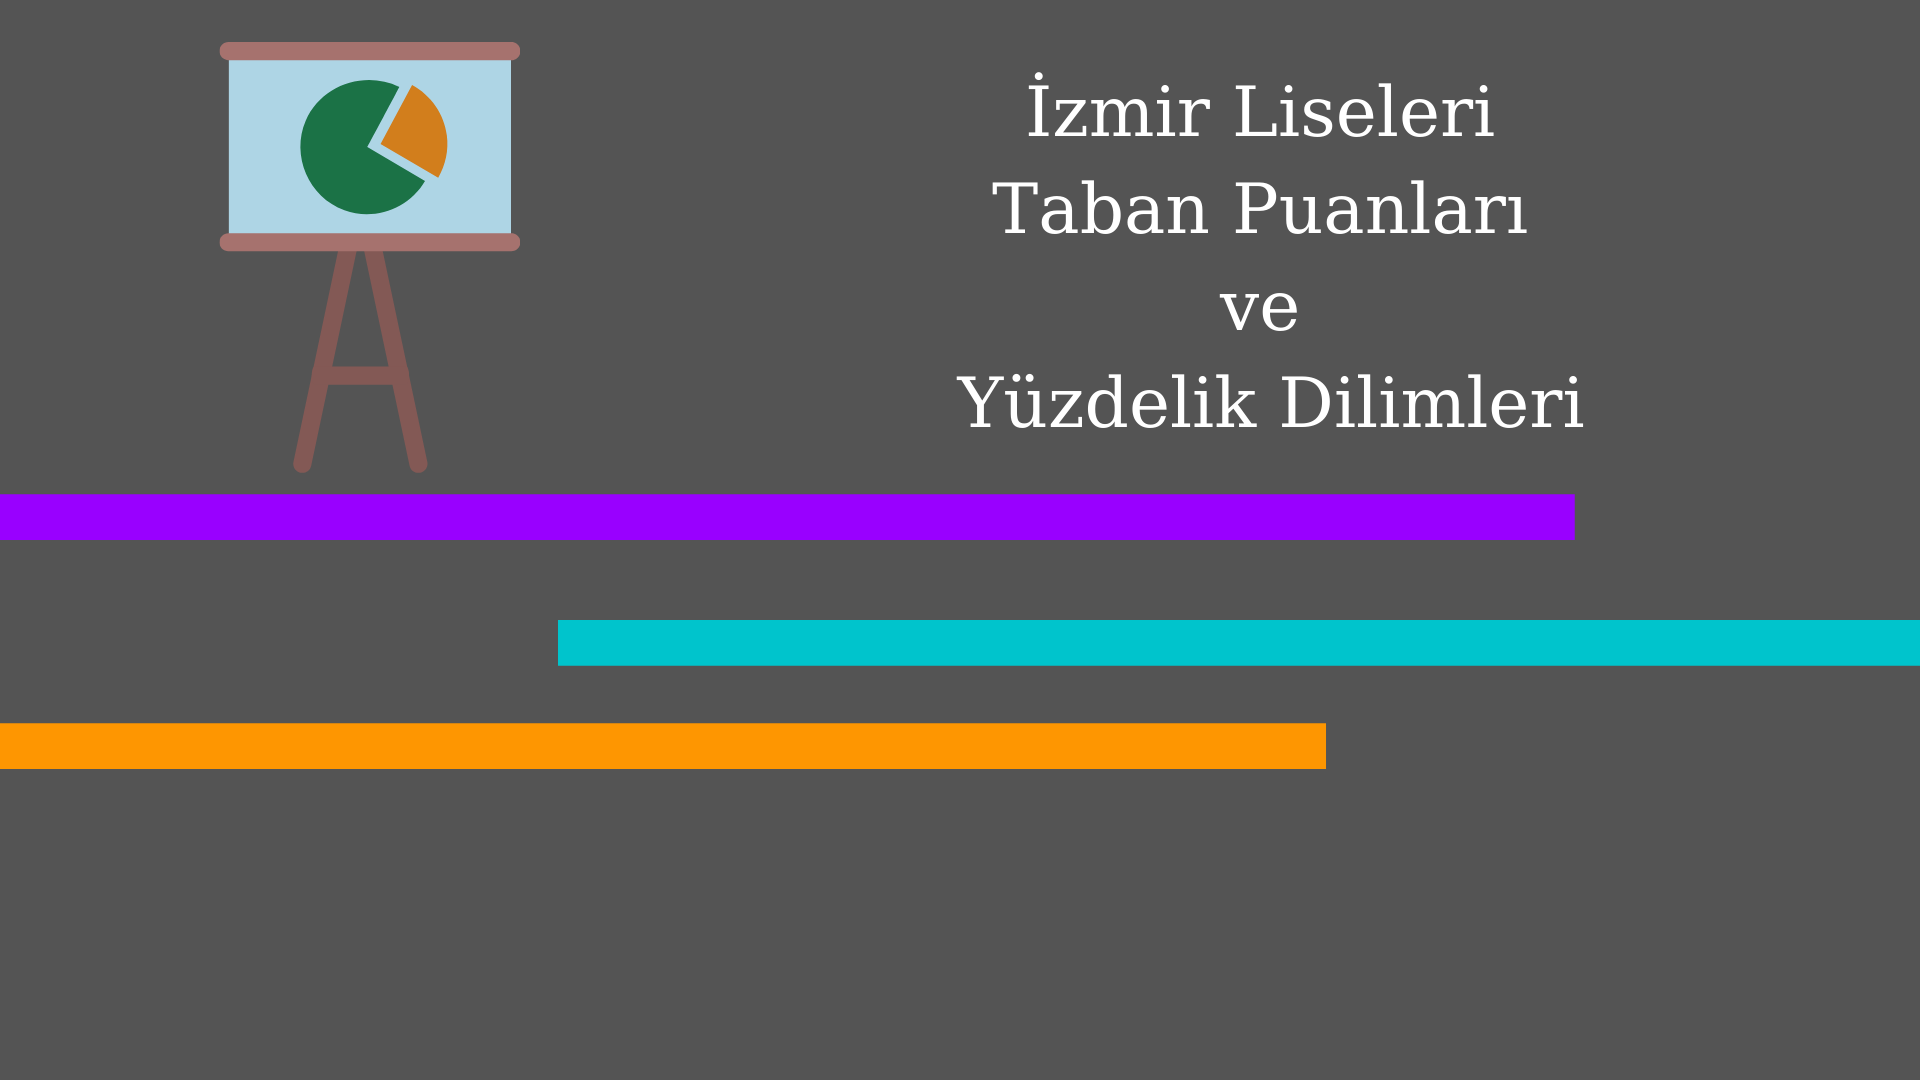 İzmir Liseleri Taban Puanları ve Yüzdelik Dilimleri 2021